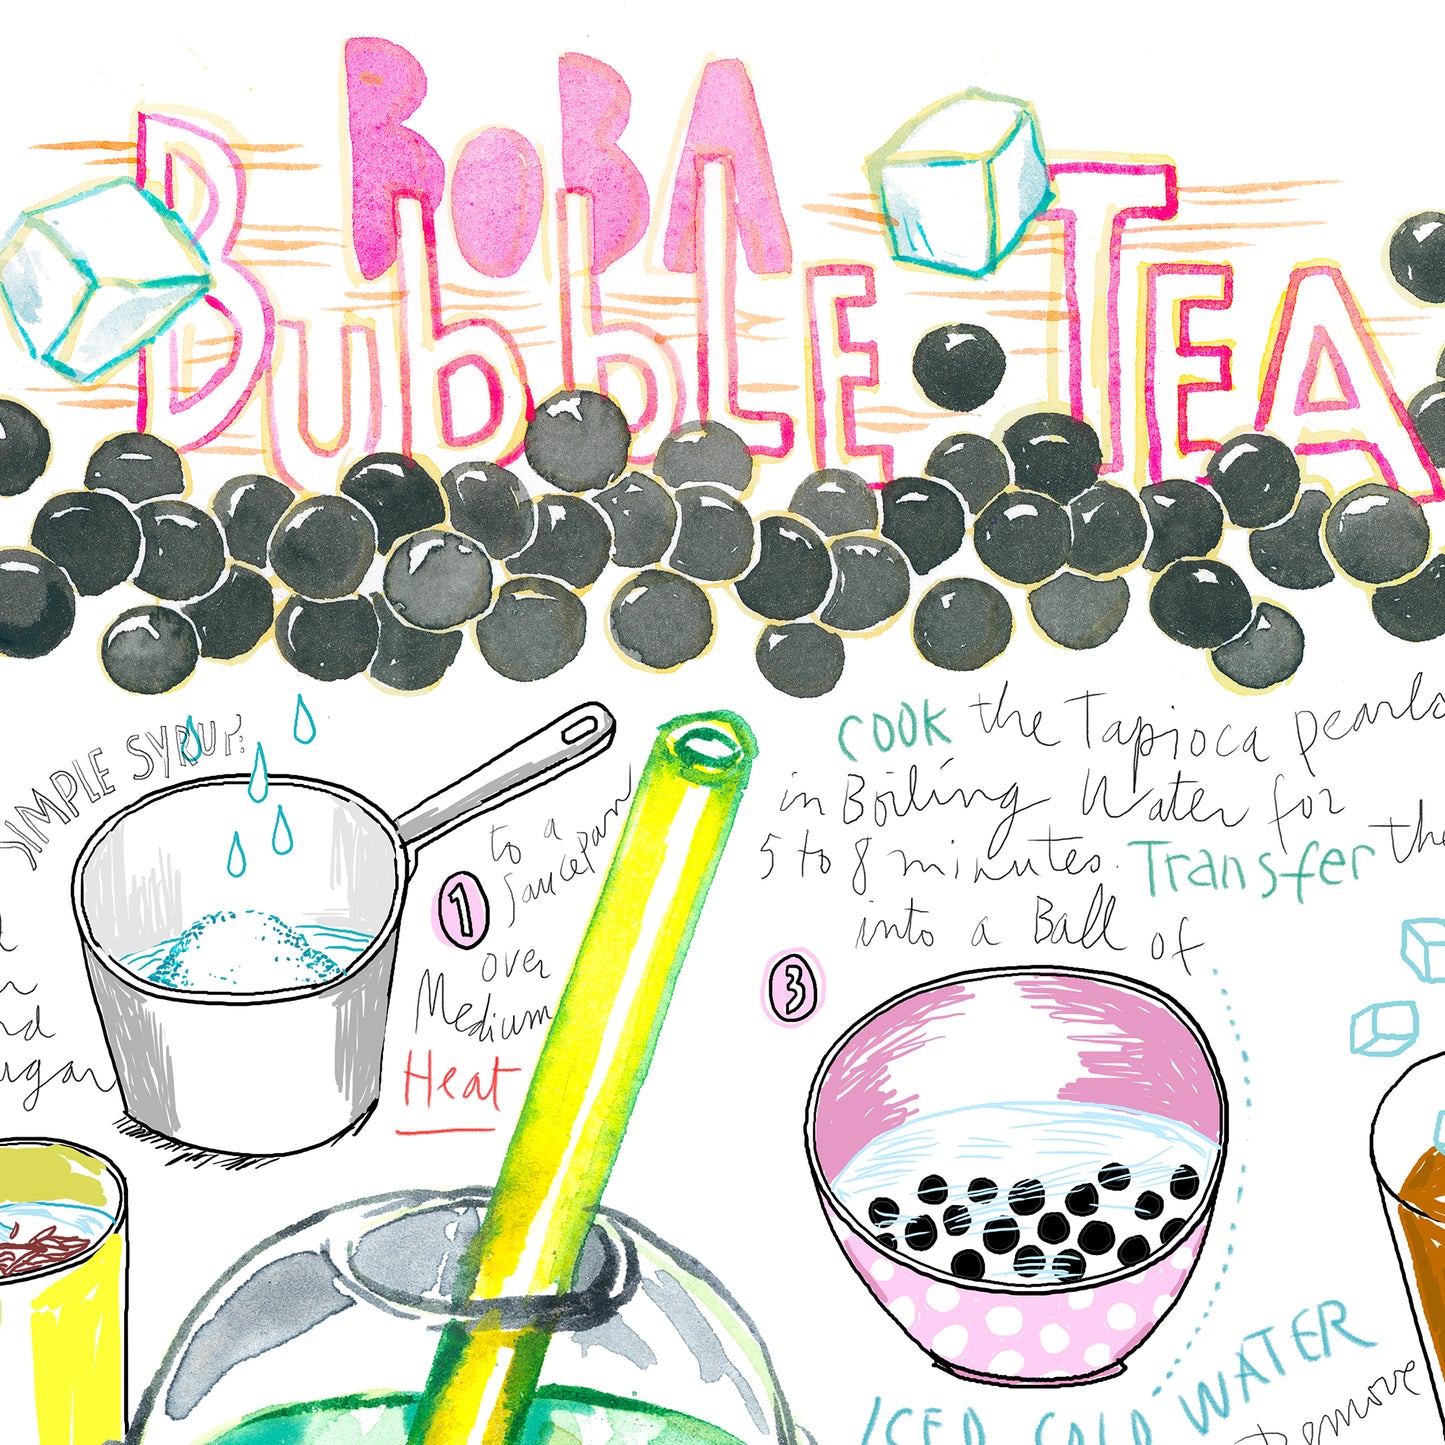 Bubble Tea recipe